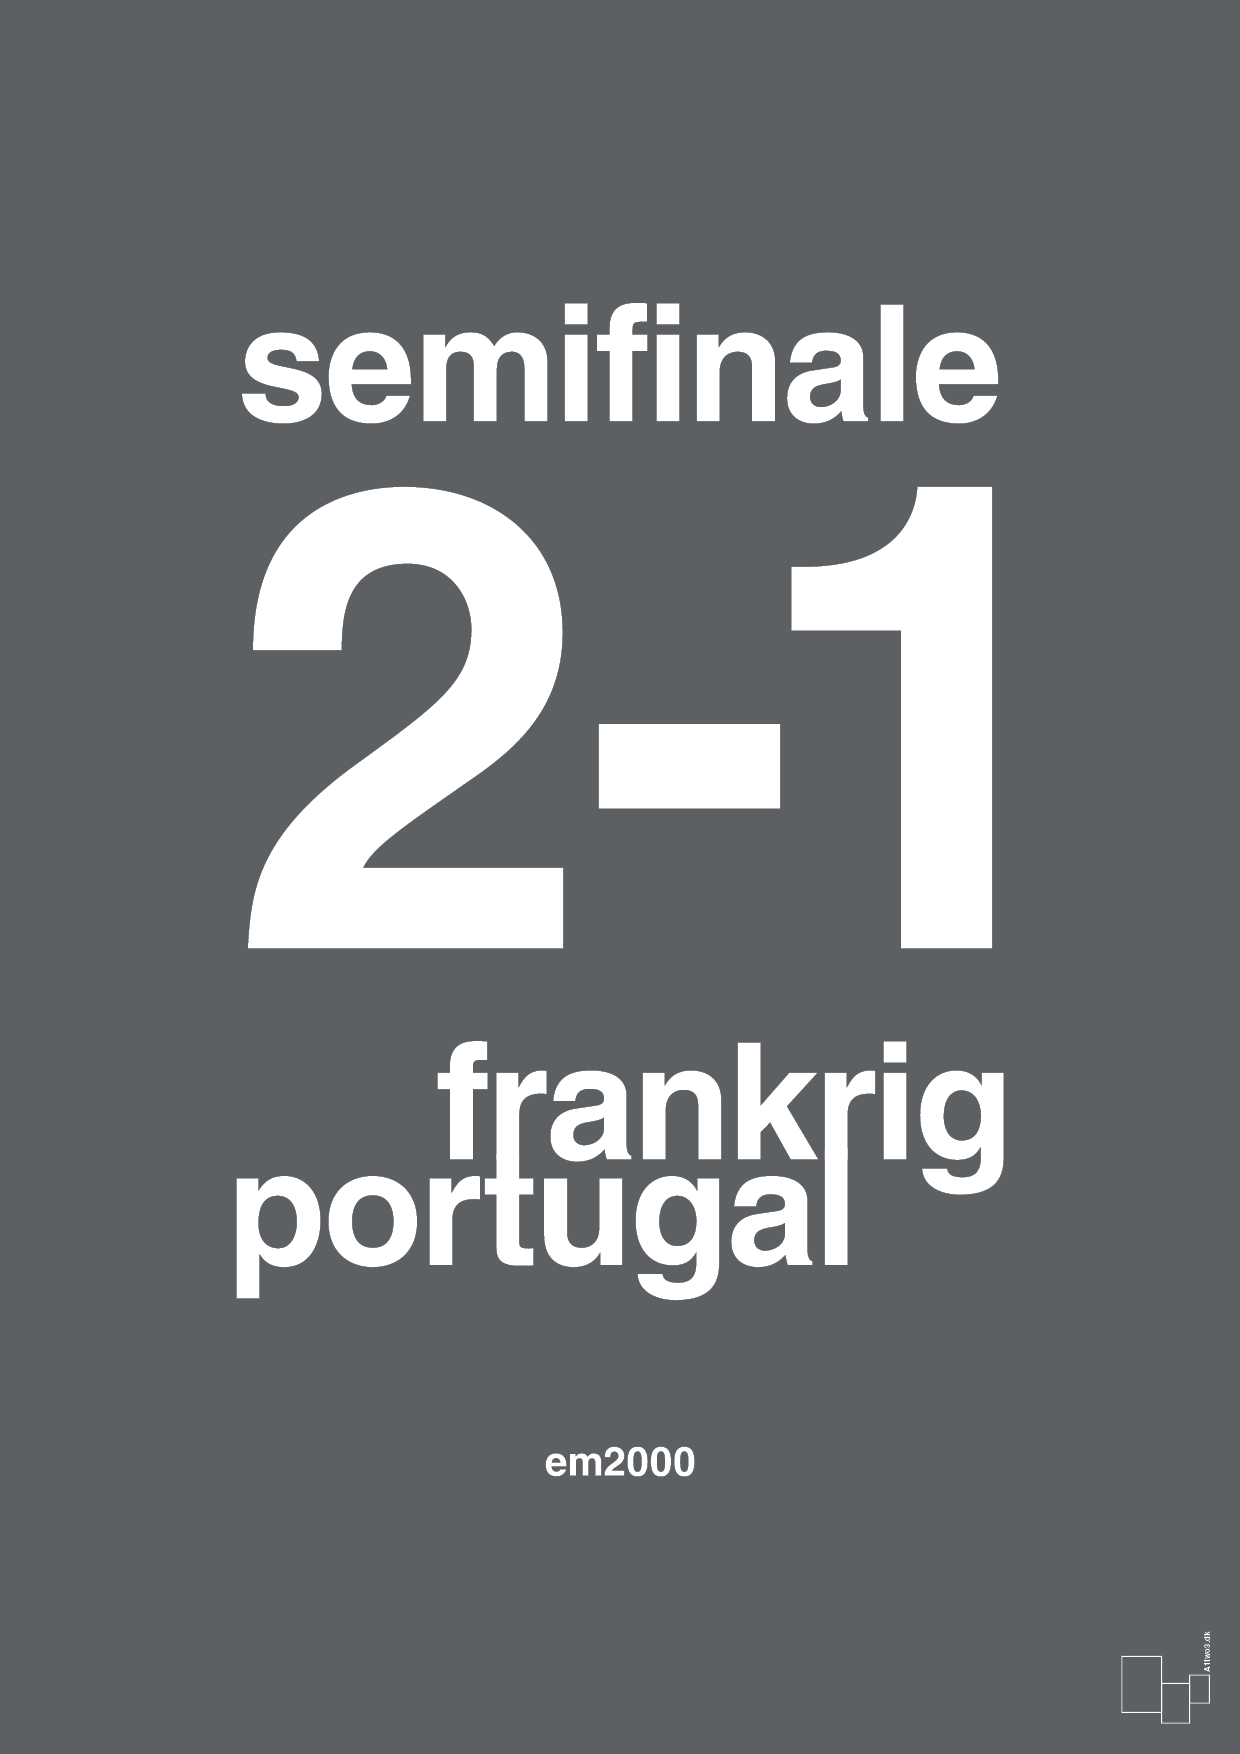 resultat for fodbold em semifinale B i 2000 - Plakat med Sport & Fritid i Graphic Charcoal